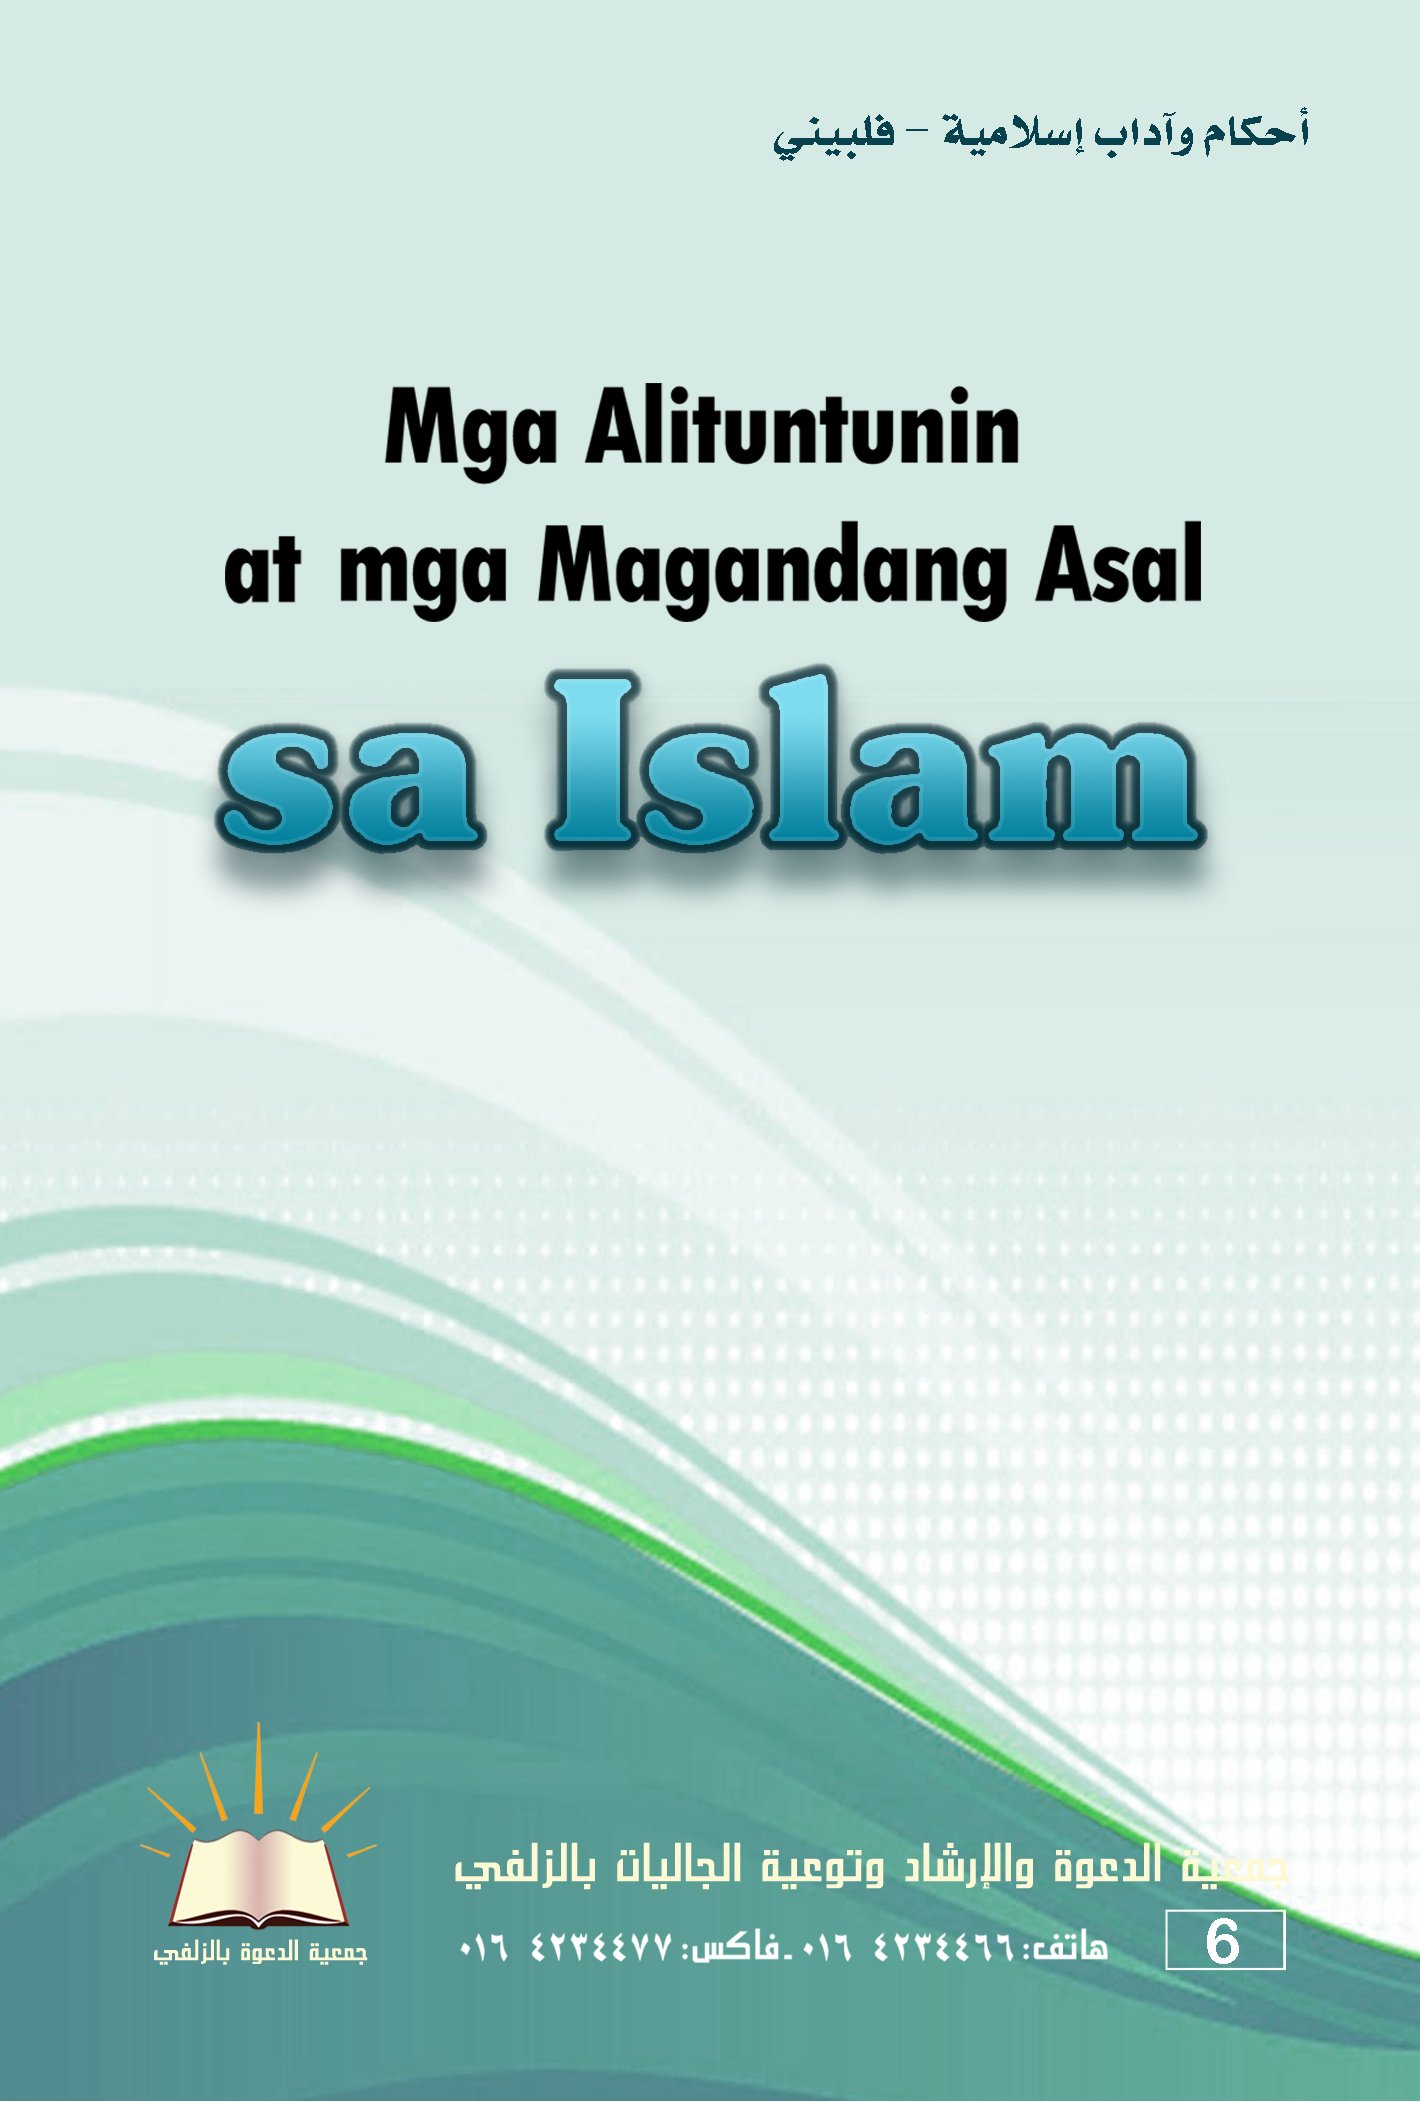 Mga Alituntuninat mga Magandang Asal sa Islam - أحكام وآداب إسلامية